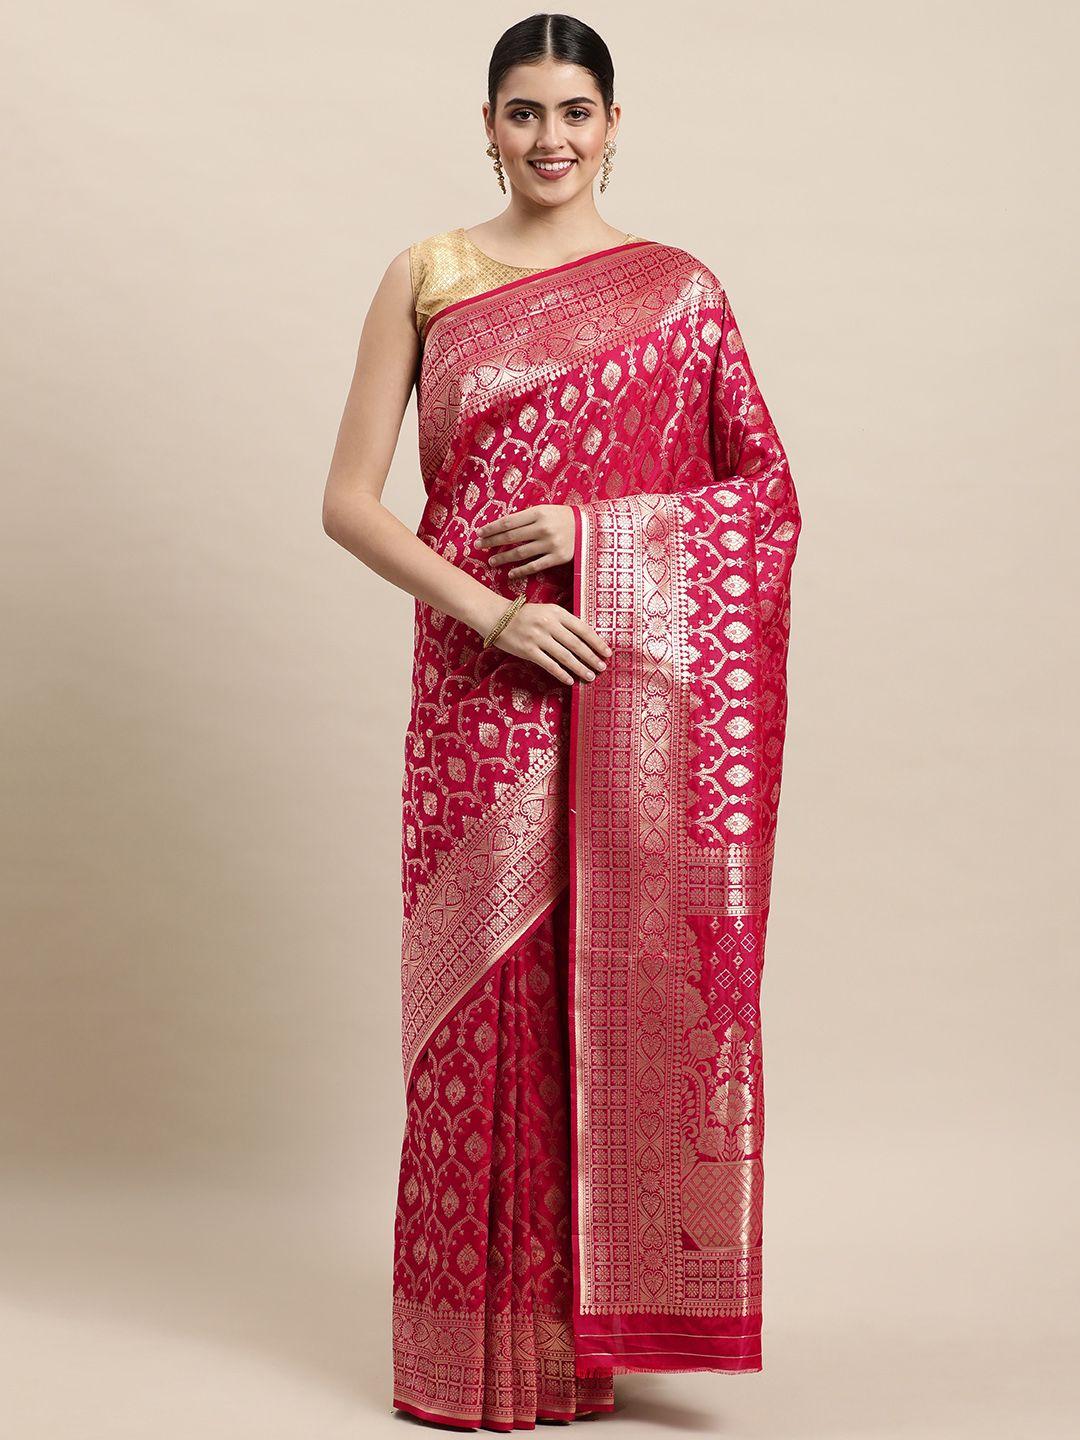 royal rajgharana saree pink & golden woven design banarasi saree